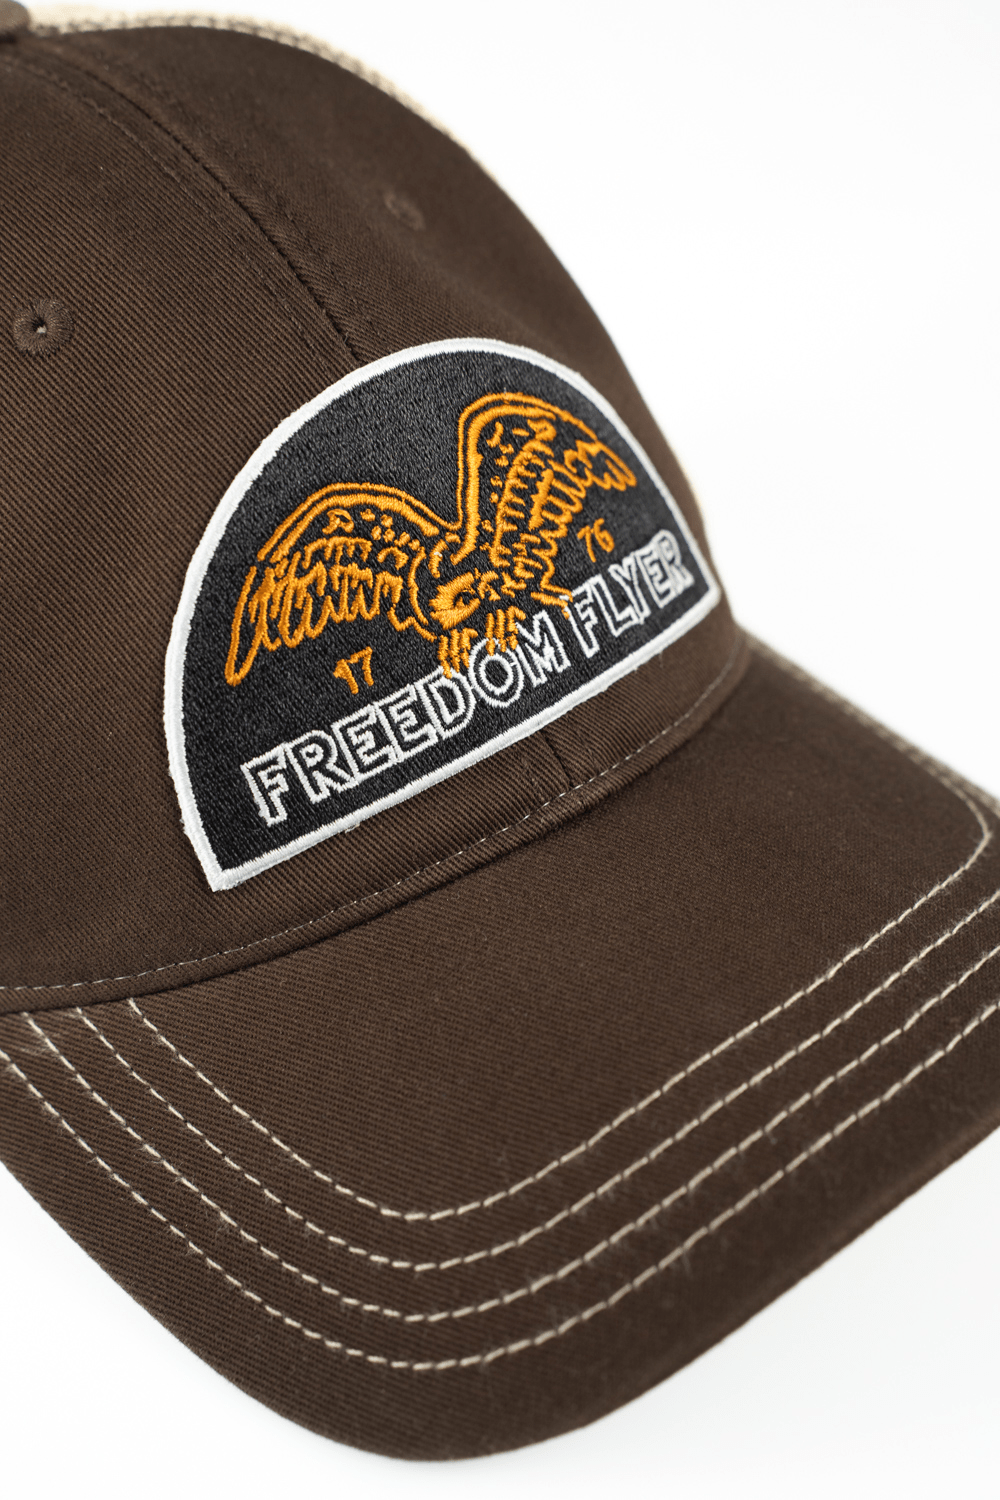 Freedom Flyer Washed Richardson Trucker Hat